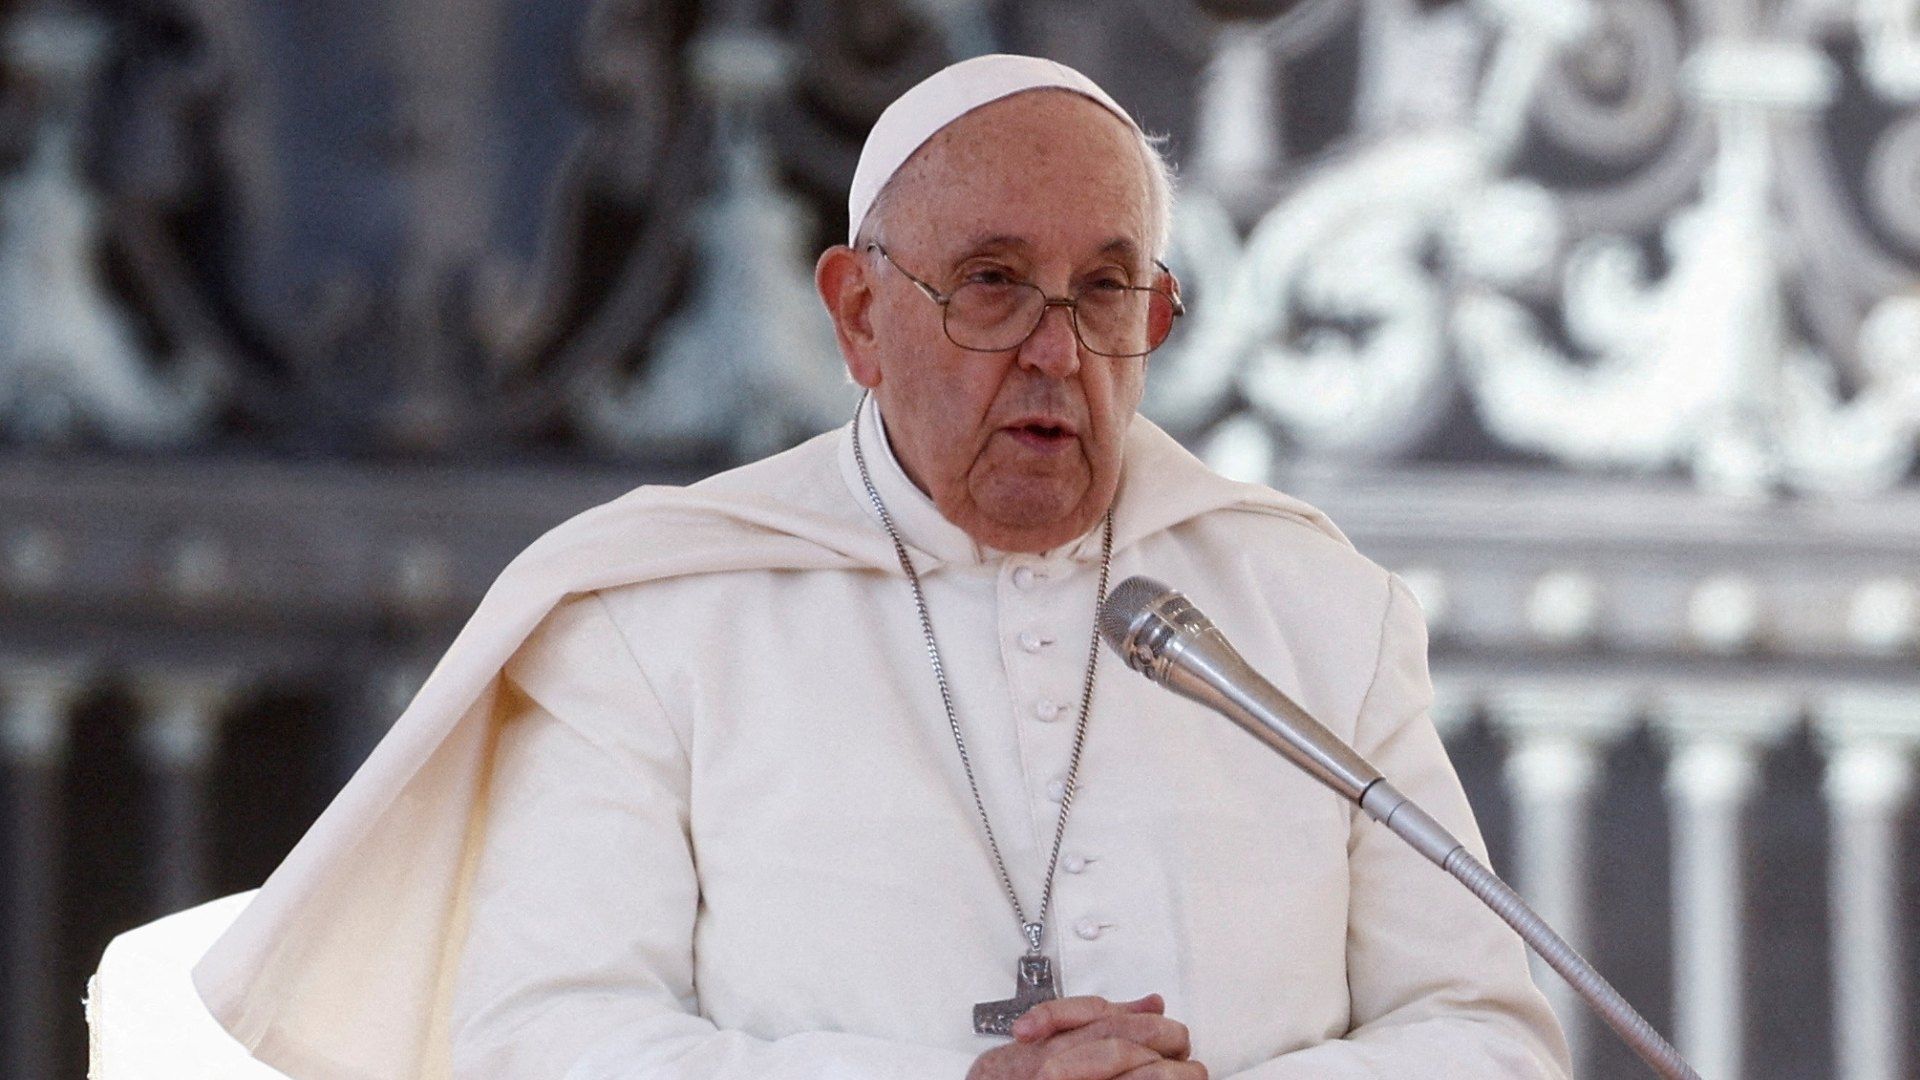 Vaticano informa que el Papa no viajará a la COP28 en Dubái